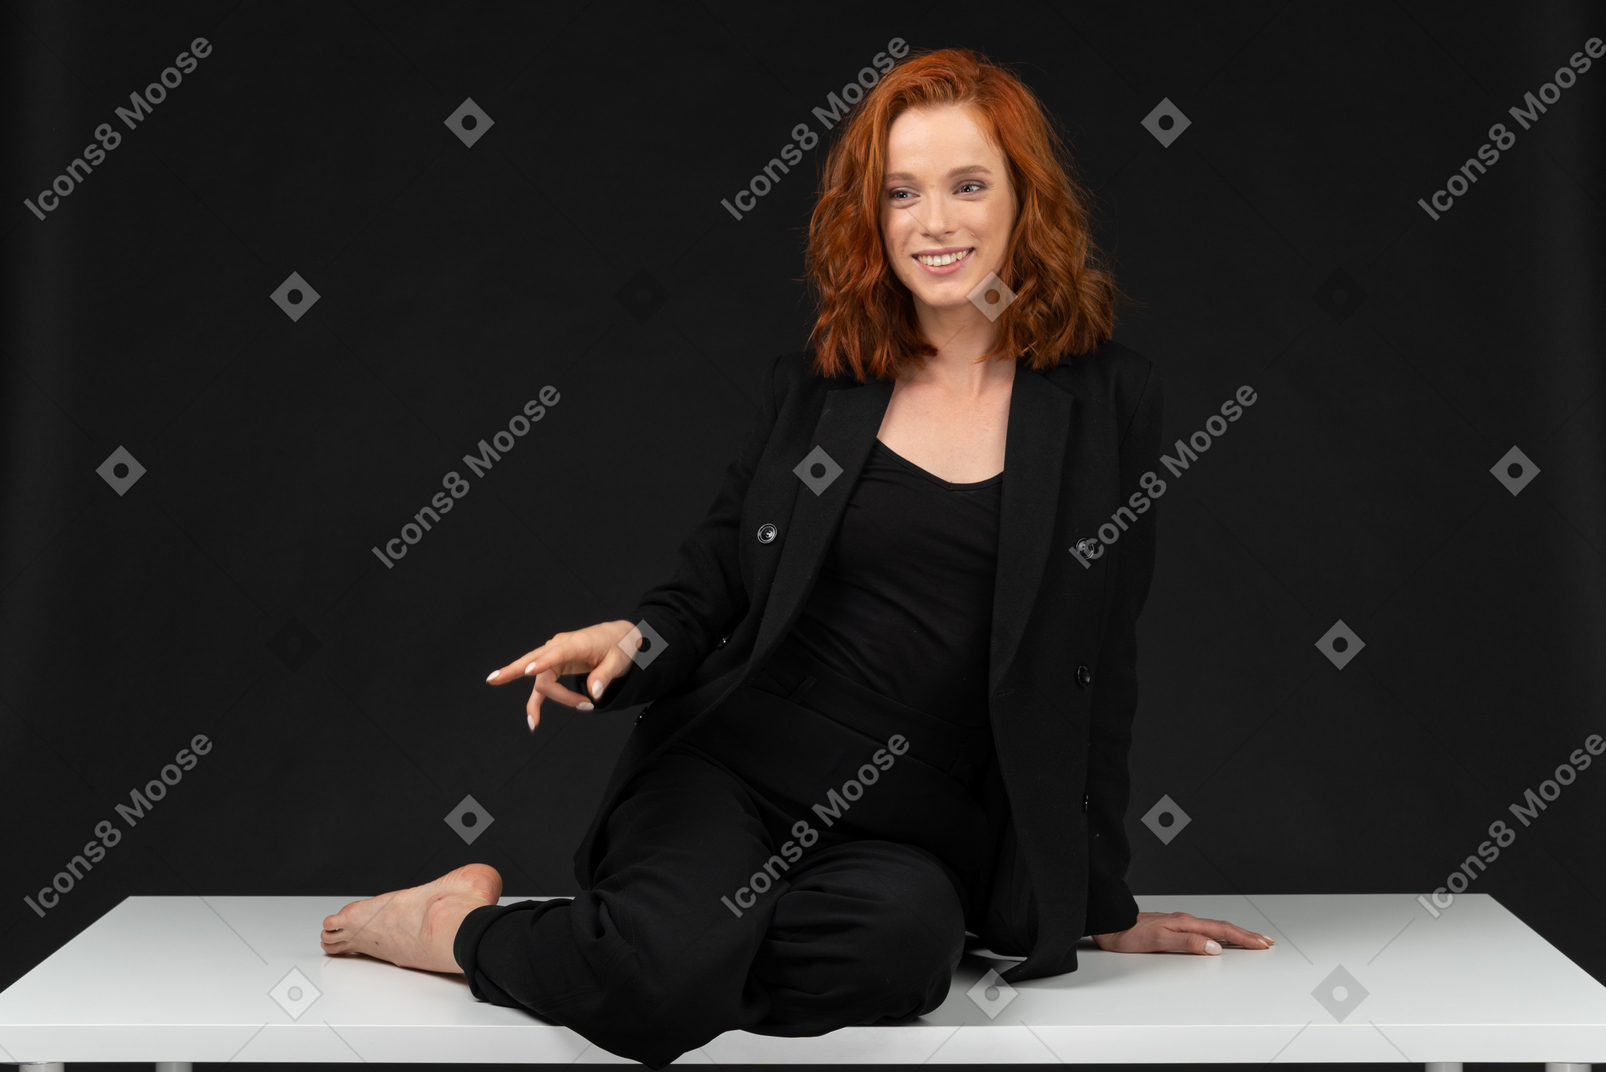 검은 옷을 입고 테이블에 앉아있는 젊은 웃는 여자의 정면보기